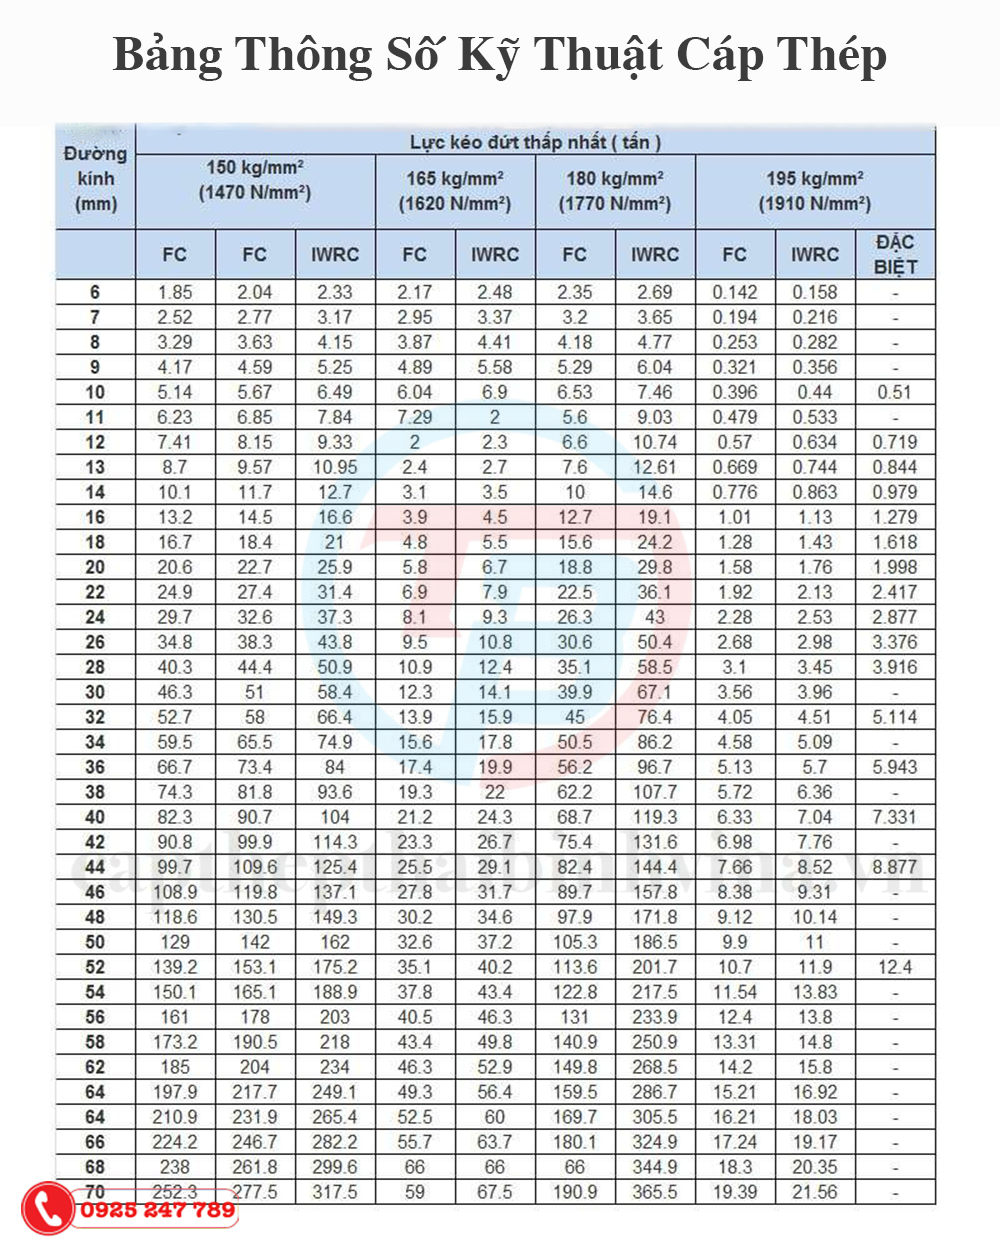 Thông số cáp thép DSR Hàn Quốc